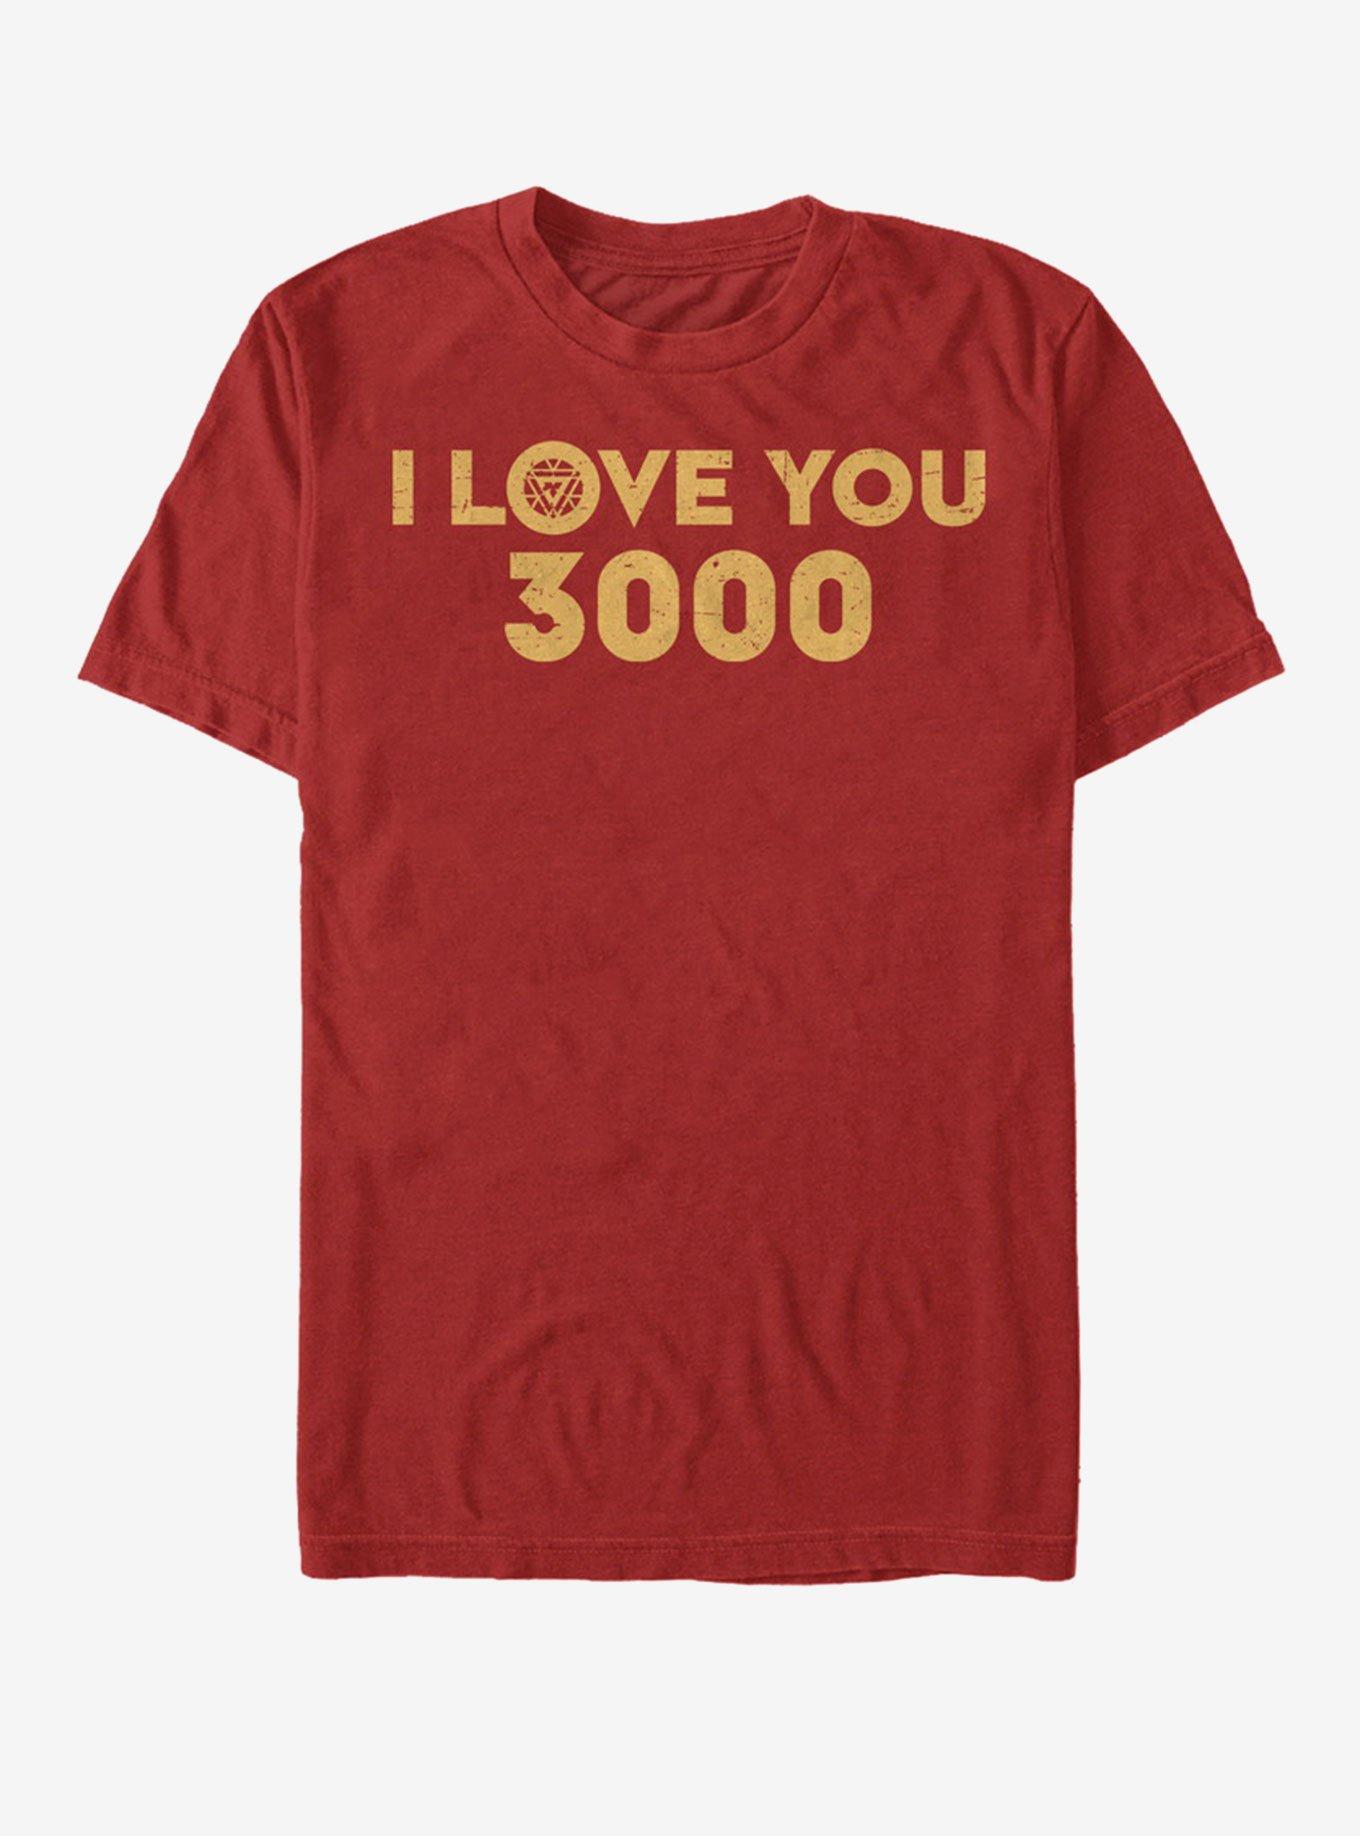 Marvel Avengers: Endgame Love 3000 T-Shirt